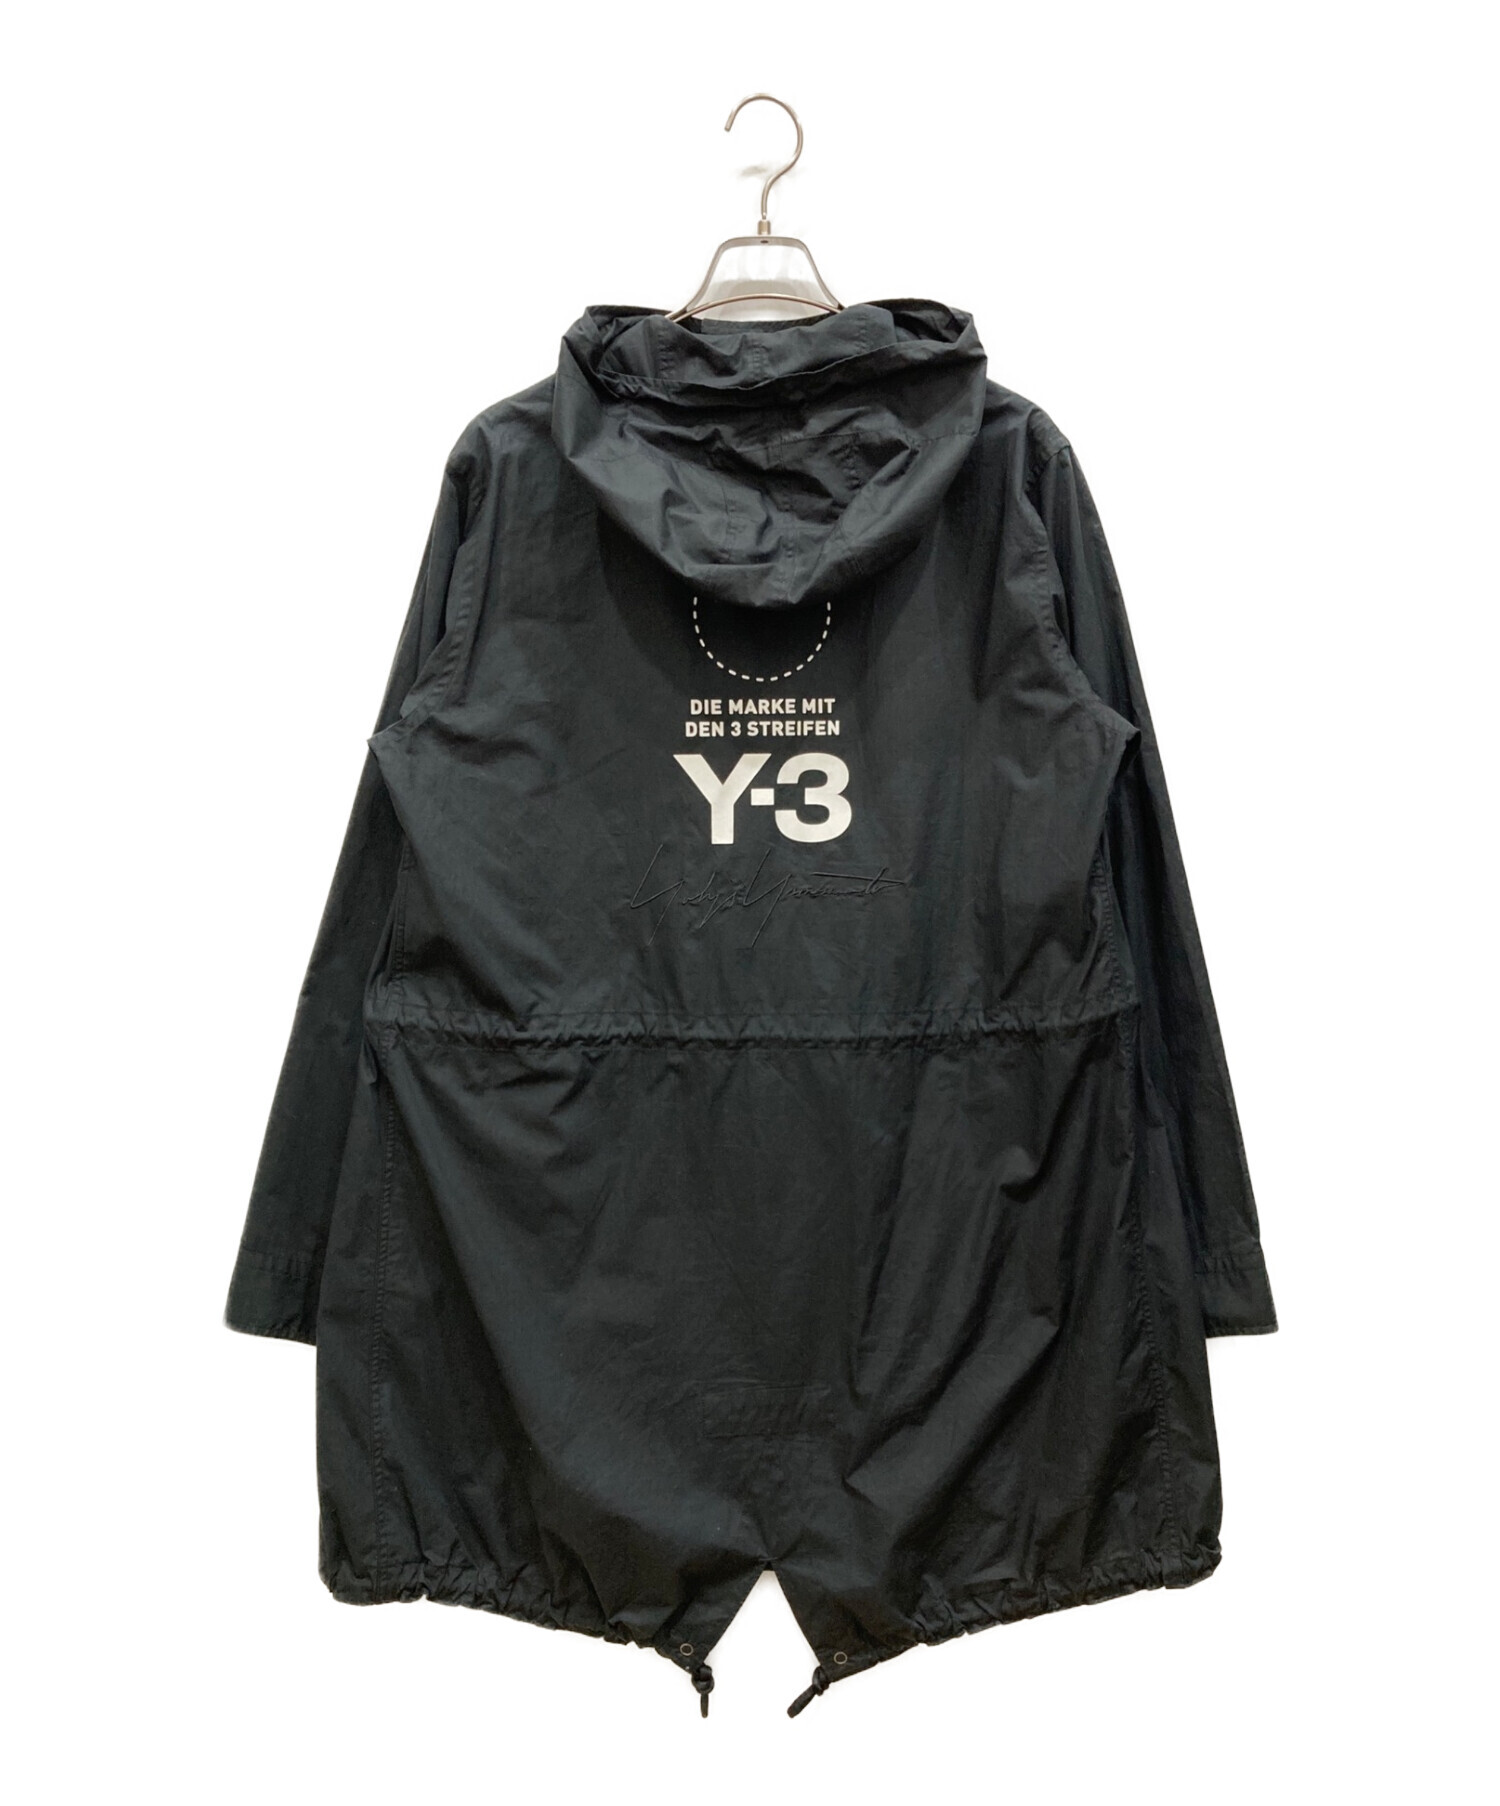 Y-3 mods parker shirtメンズ - ジャケット・アウター